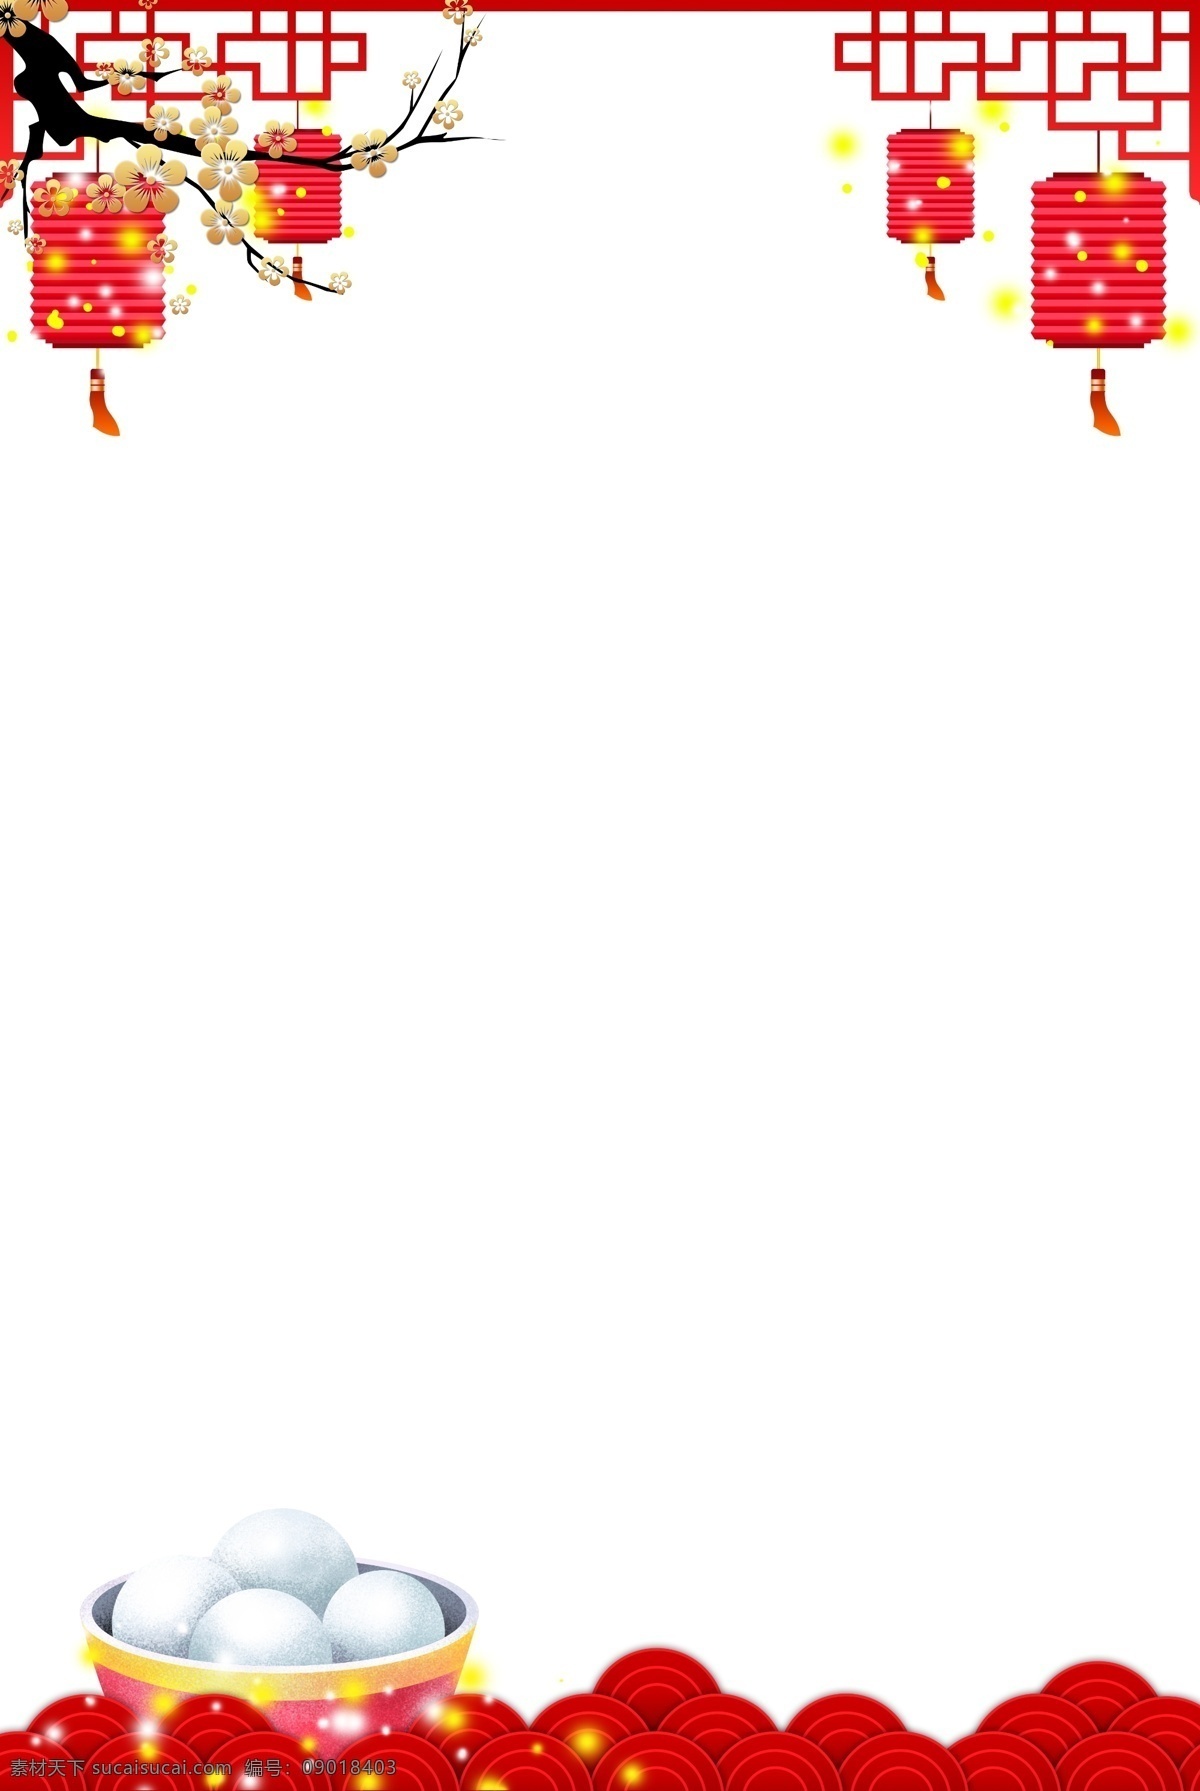 喜庆 节日 中式 装饰 边框 红色 纸灯笼 灯笼 灯谜 猜灯谜 元宵节 新年 中国风 梅花 梅花枝 中式装饰 海报边框